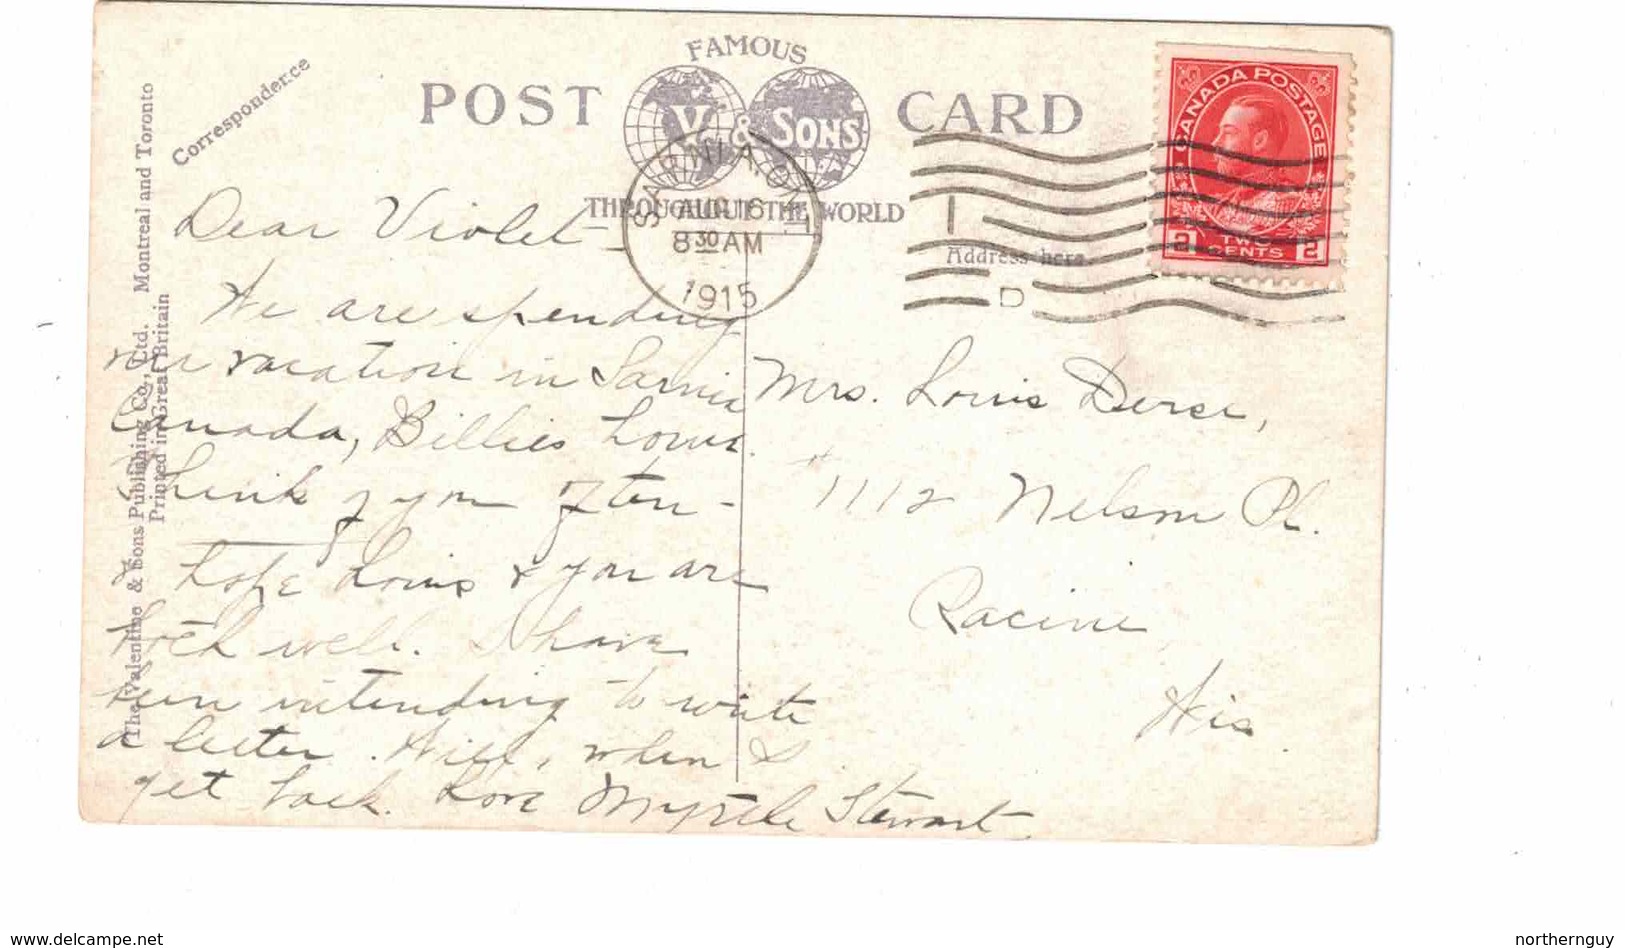 SARNIA, Ontario, Canada, Lake Huron Park Hotel, Lake Huron Beach, 1915 Postcard, Lambton County - Sarnia